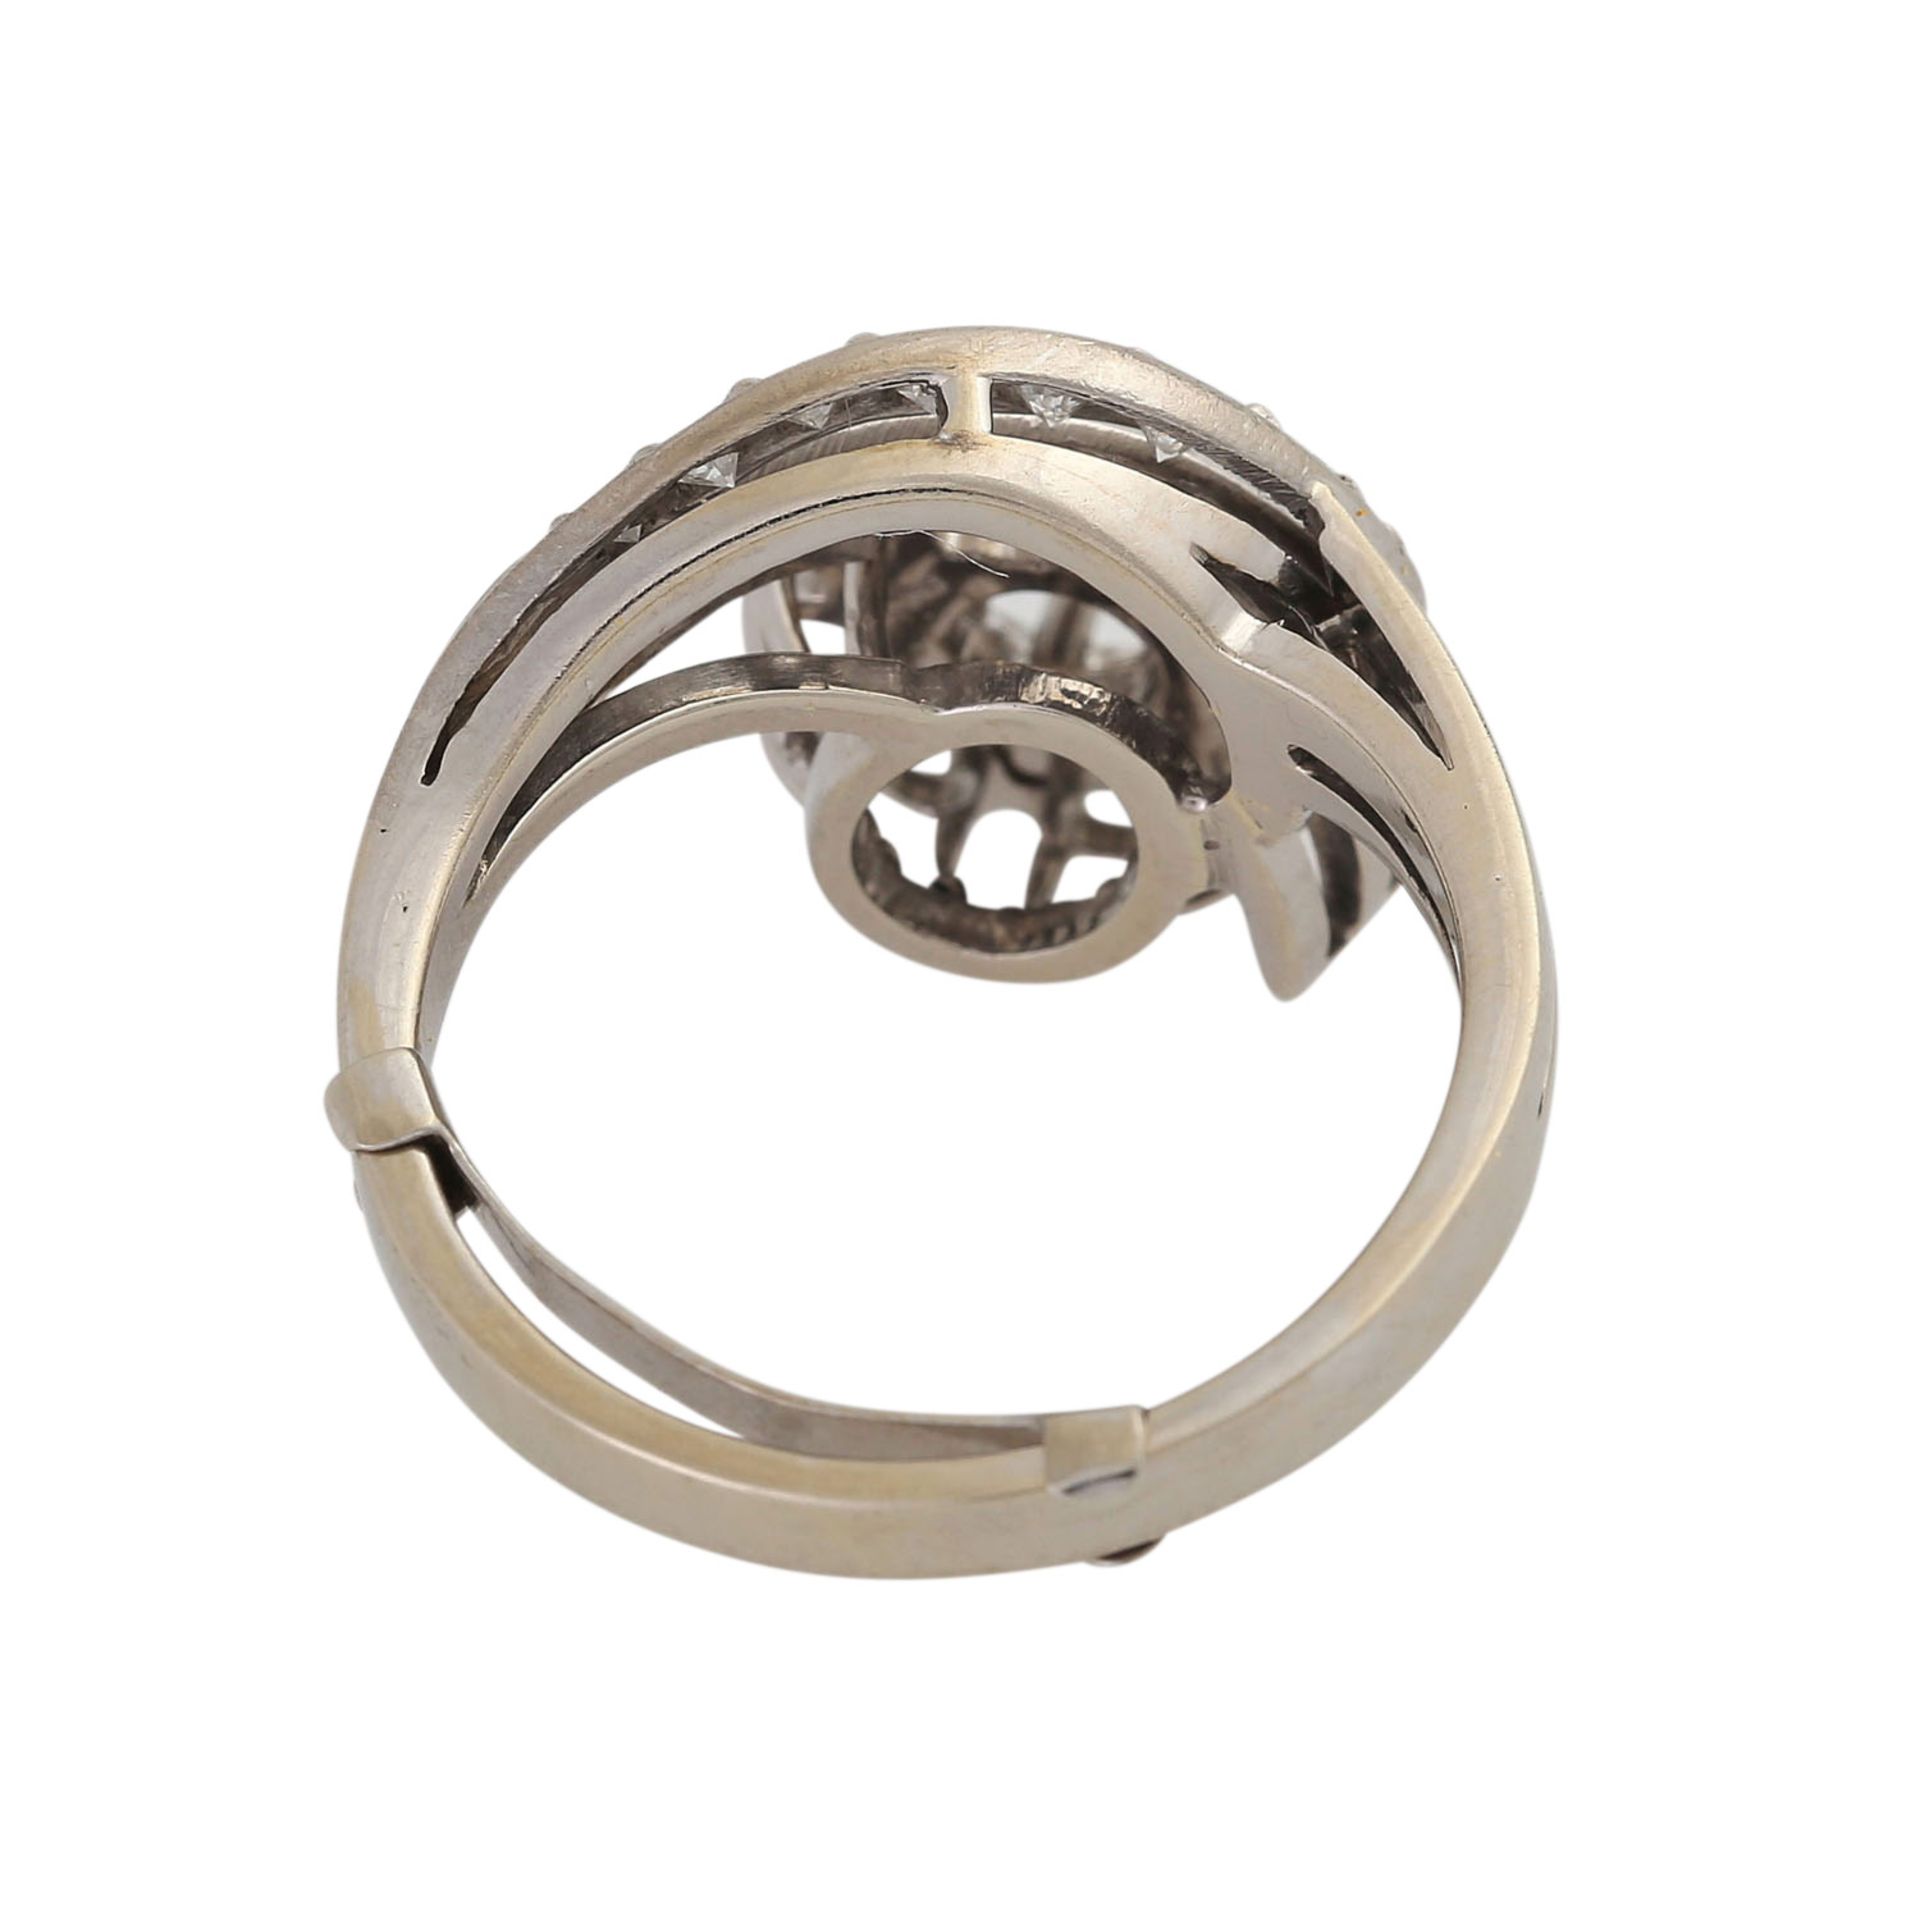 Ring mit Brillanten ca. 1,3 ct,FW-WEISS (G-H)/VVS-VS, davon Mittelstein ca. 0,5 ct, WG, RW 52/53, - Image 4 of 4